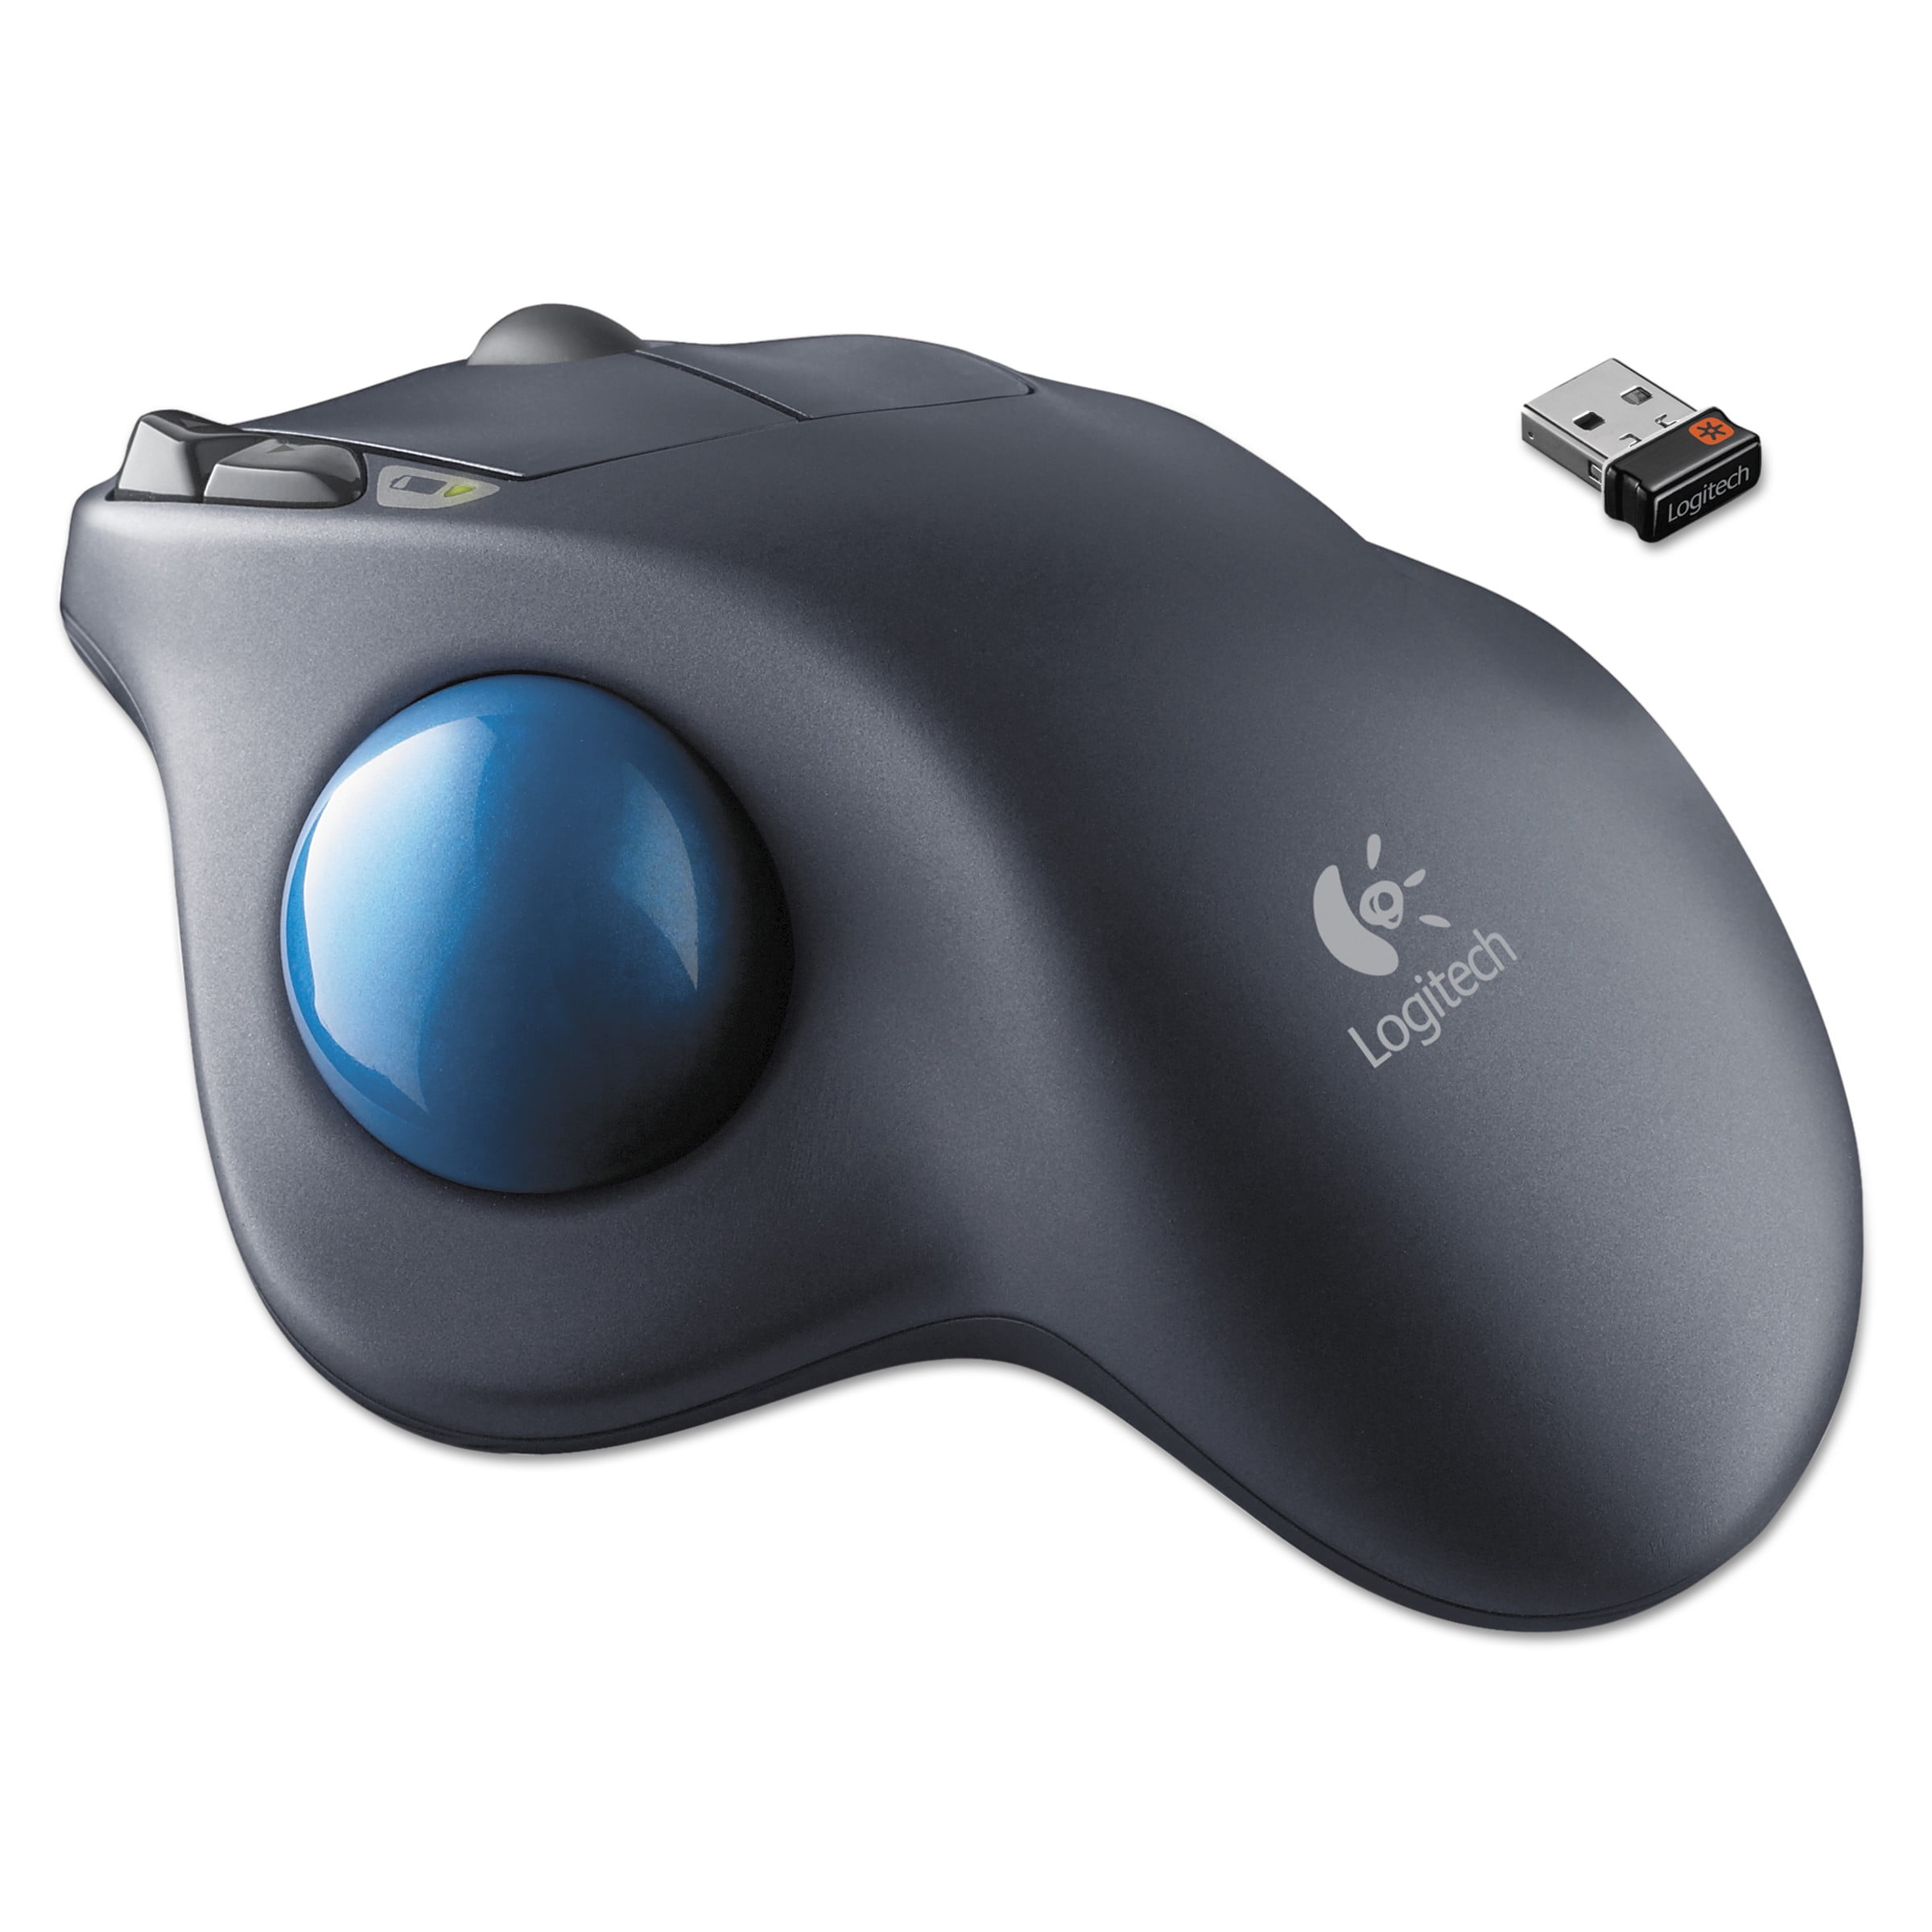 Logitech M570 Wireless Trackball Mouse - Walmart.com